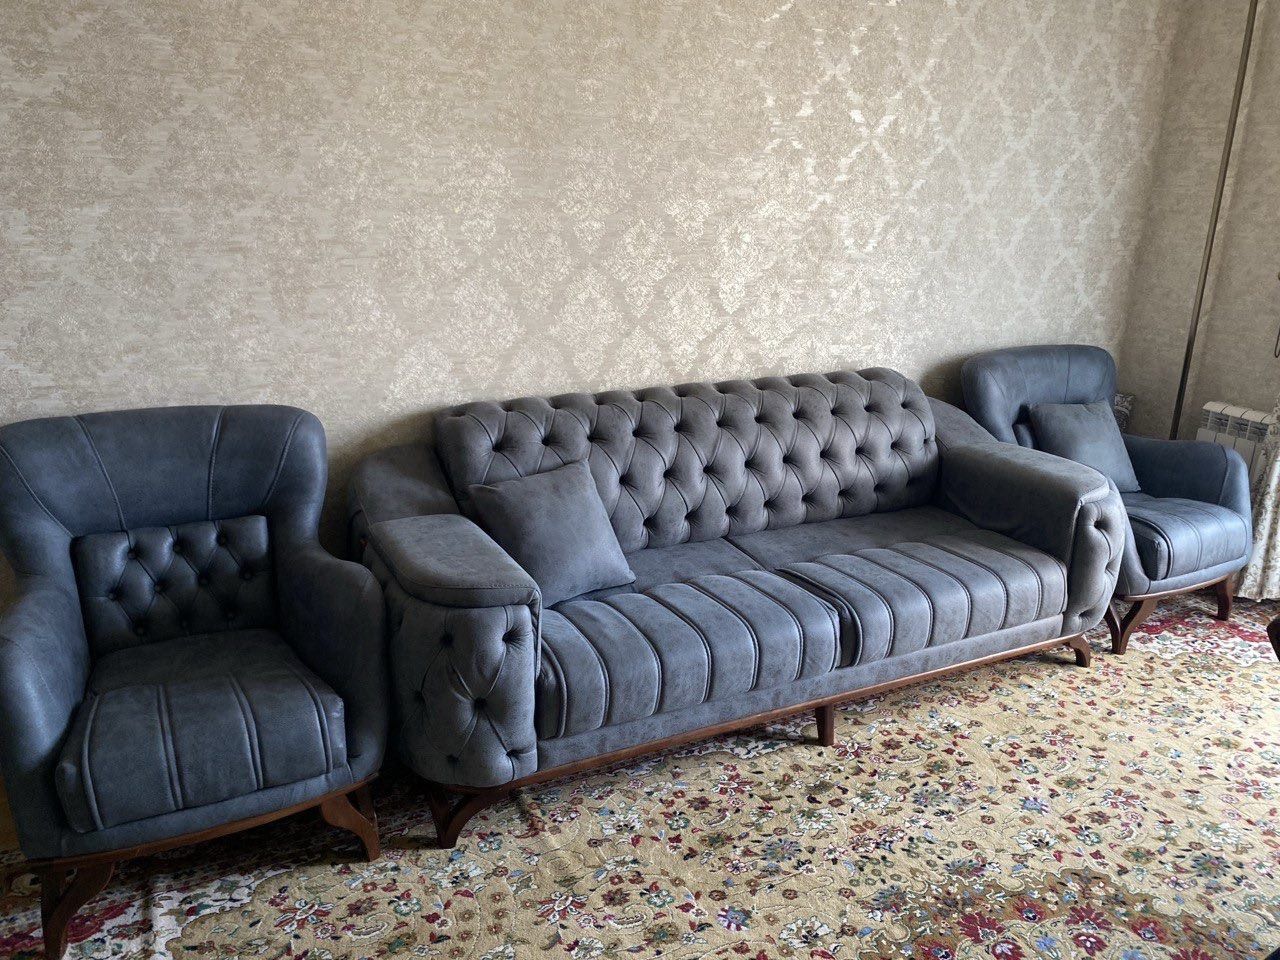 Продается диван и 2 соответствующих кресла